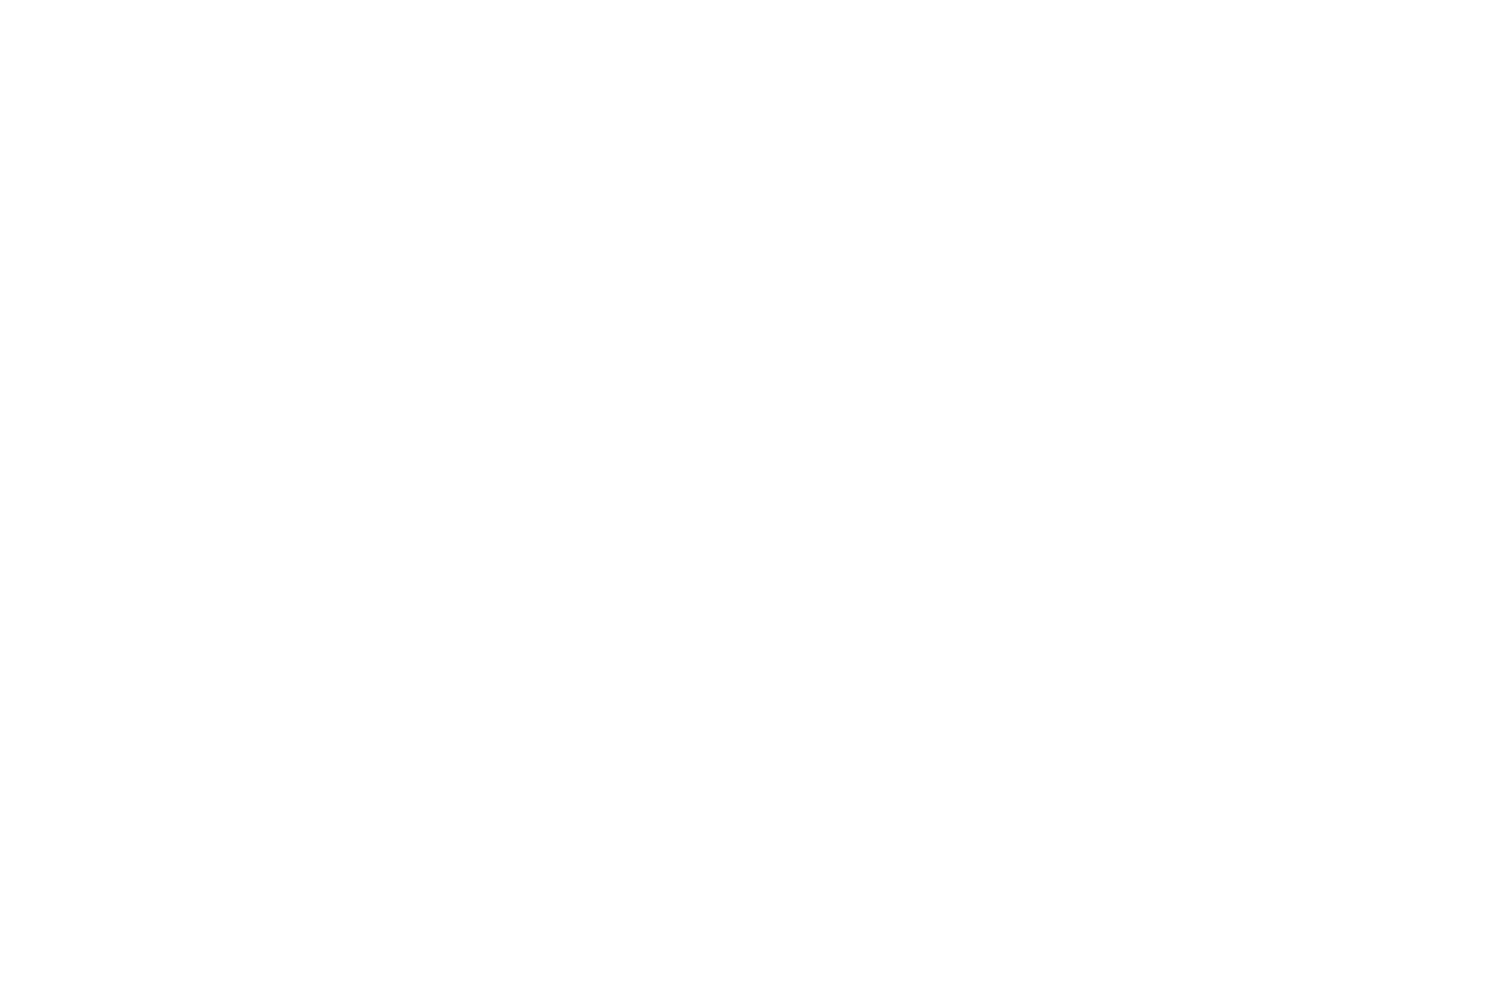 Calloway Media